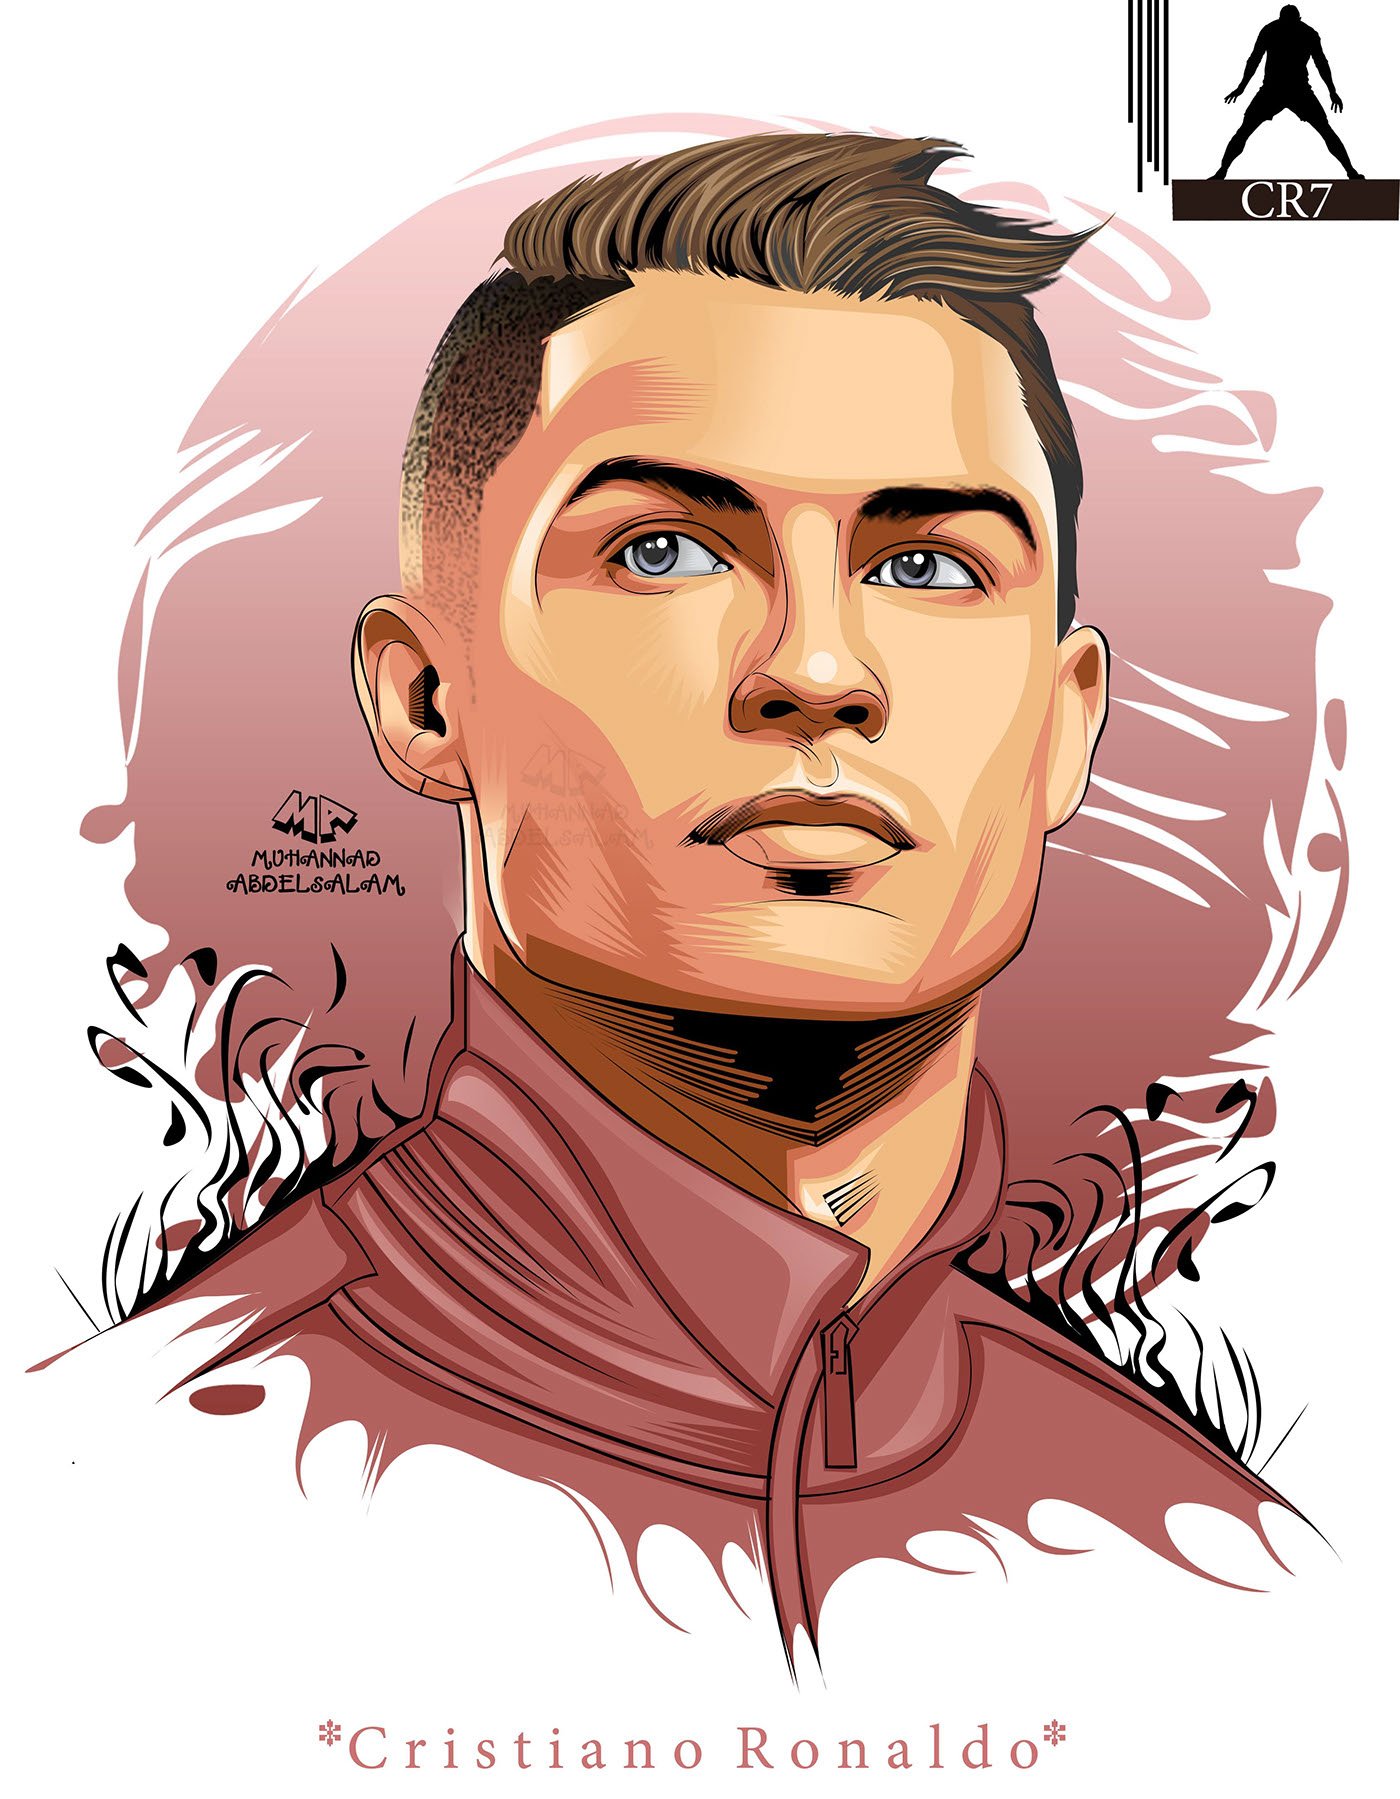 Ronaldo cartoon